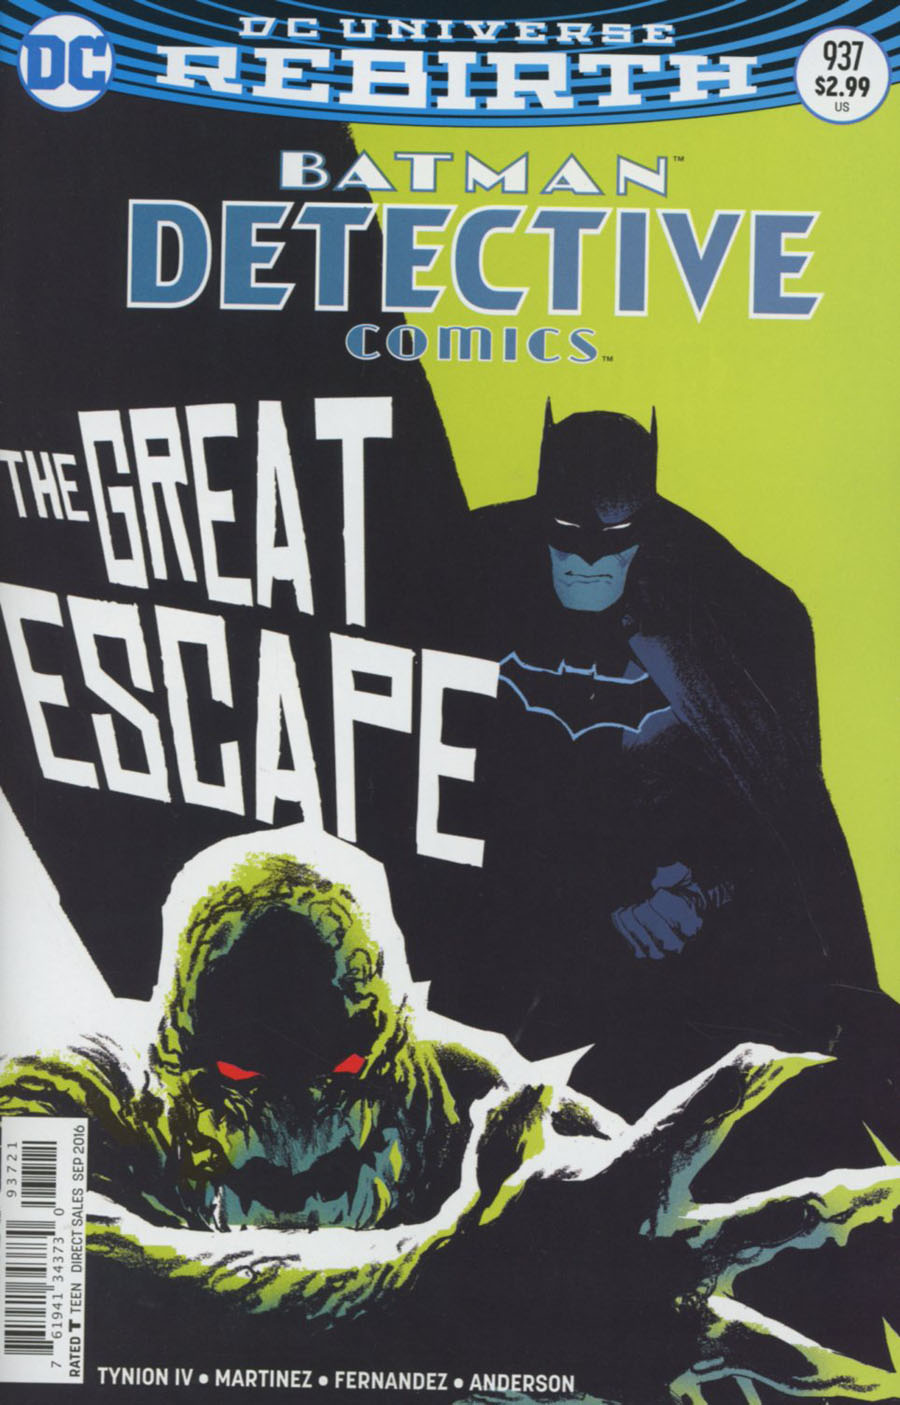 Detective Comics #937 Variant Edition (1937)